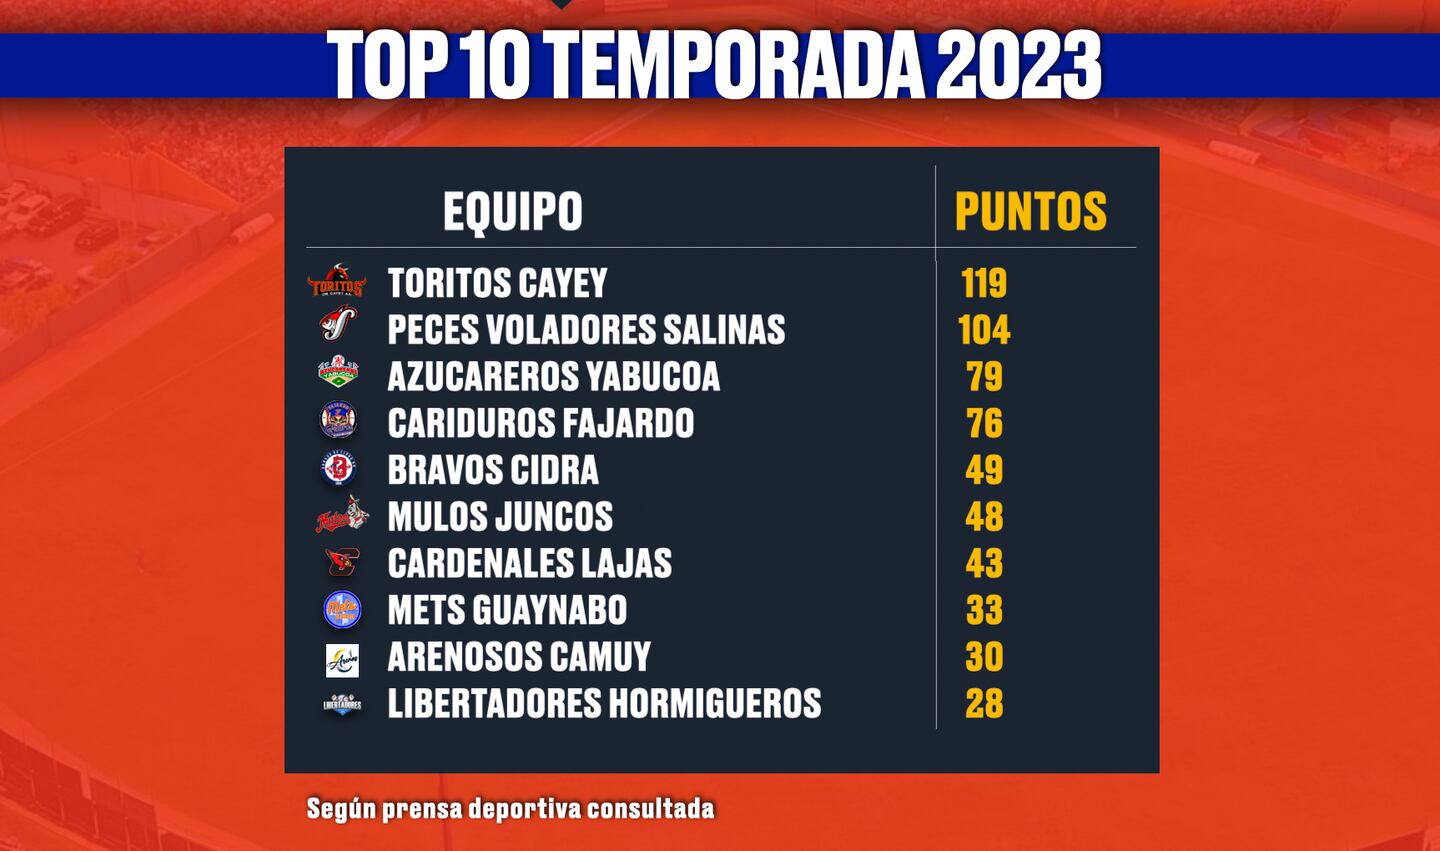 Top 10 temporada 2023